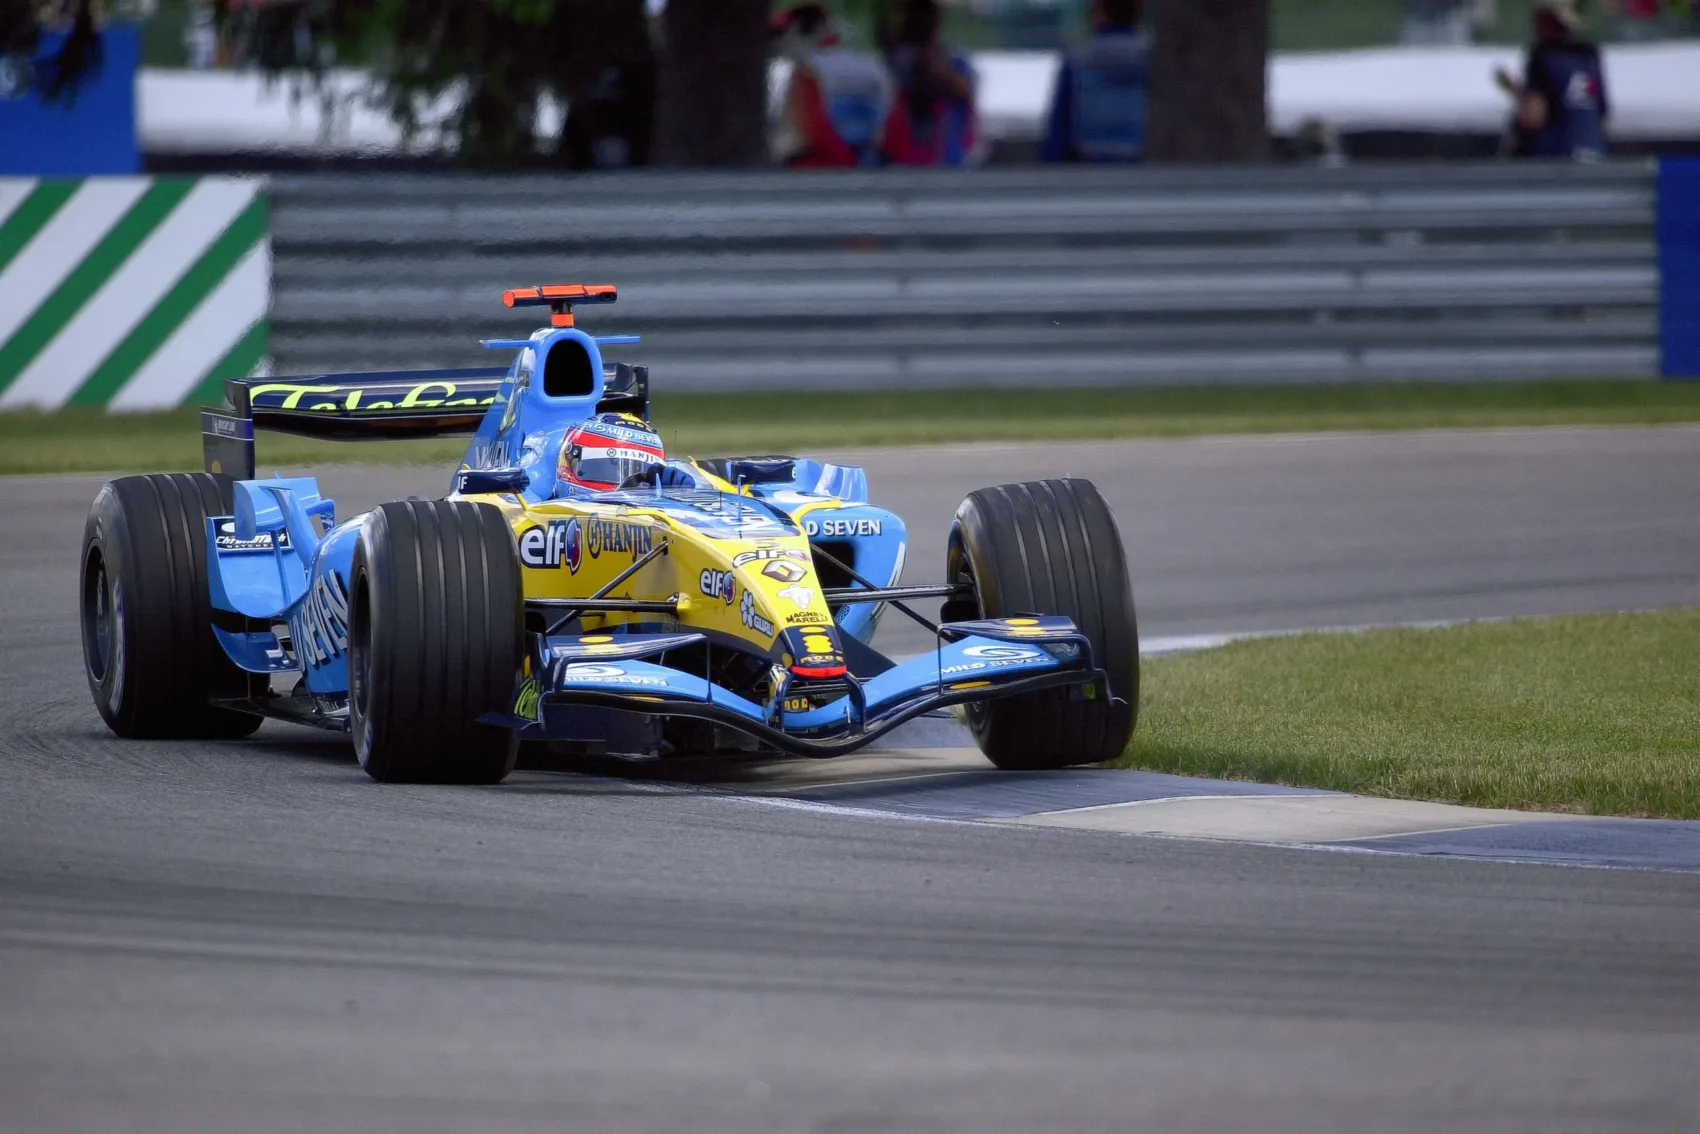 Újabb kirúgás: Alonso vb-címeinek egyik kulcsfigurája is távozott a széteső F1-es istállótól